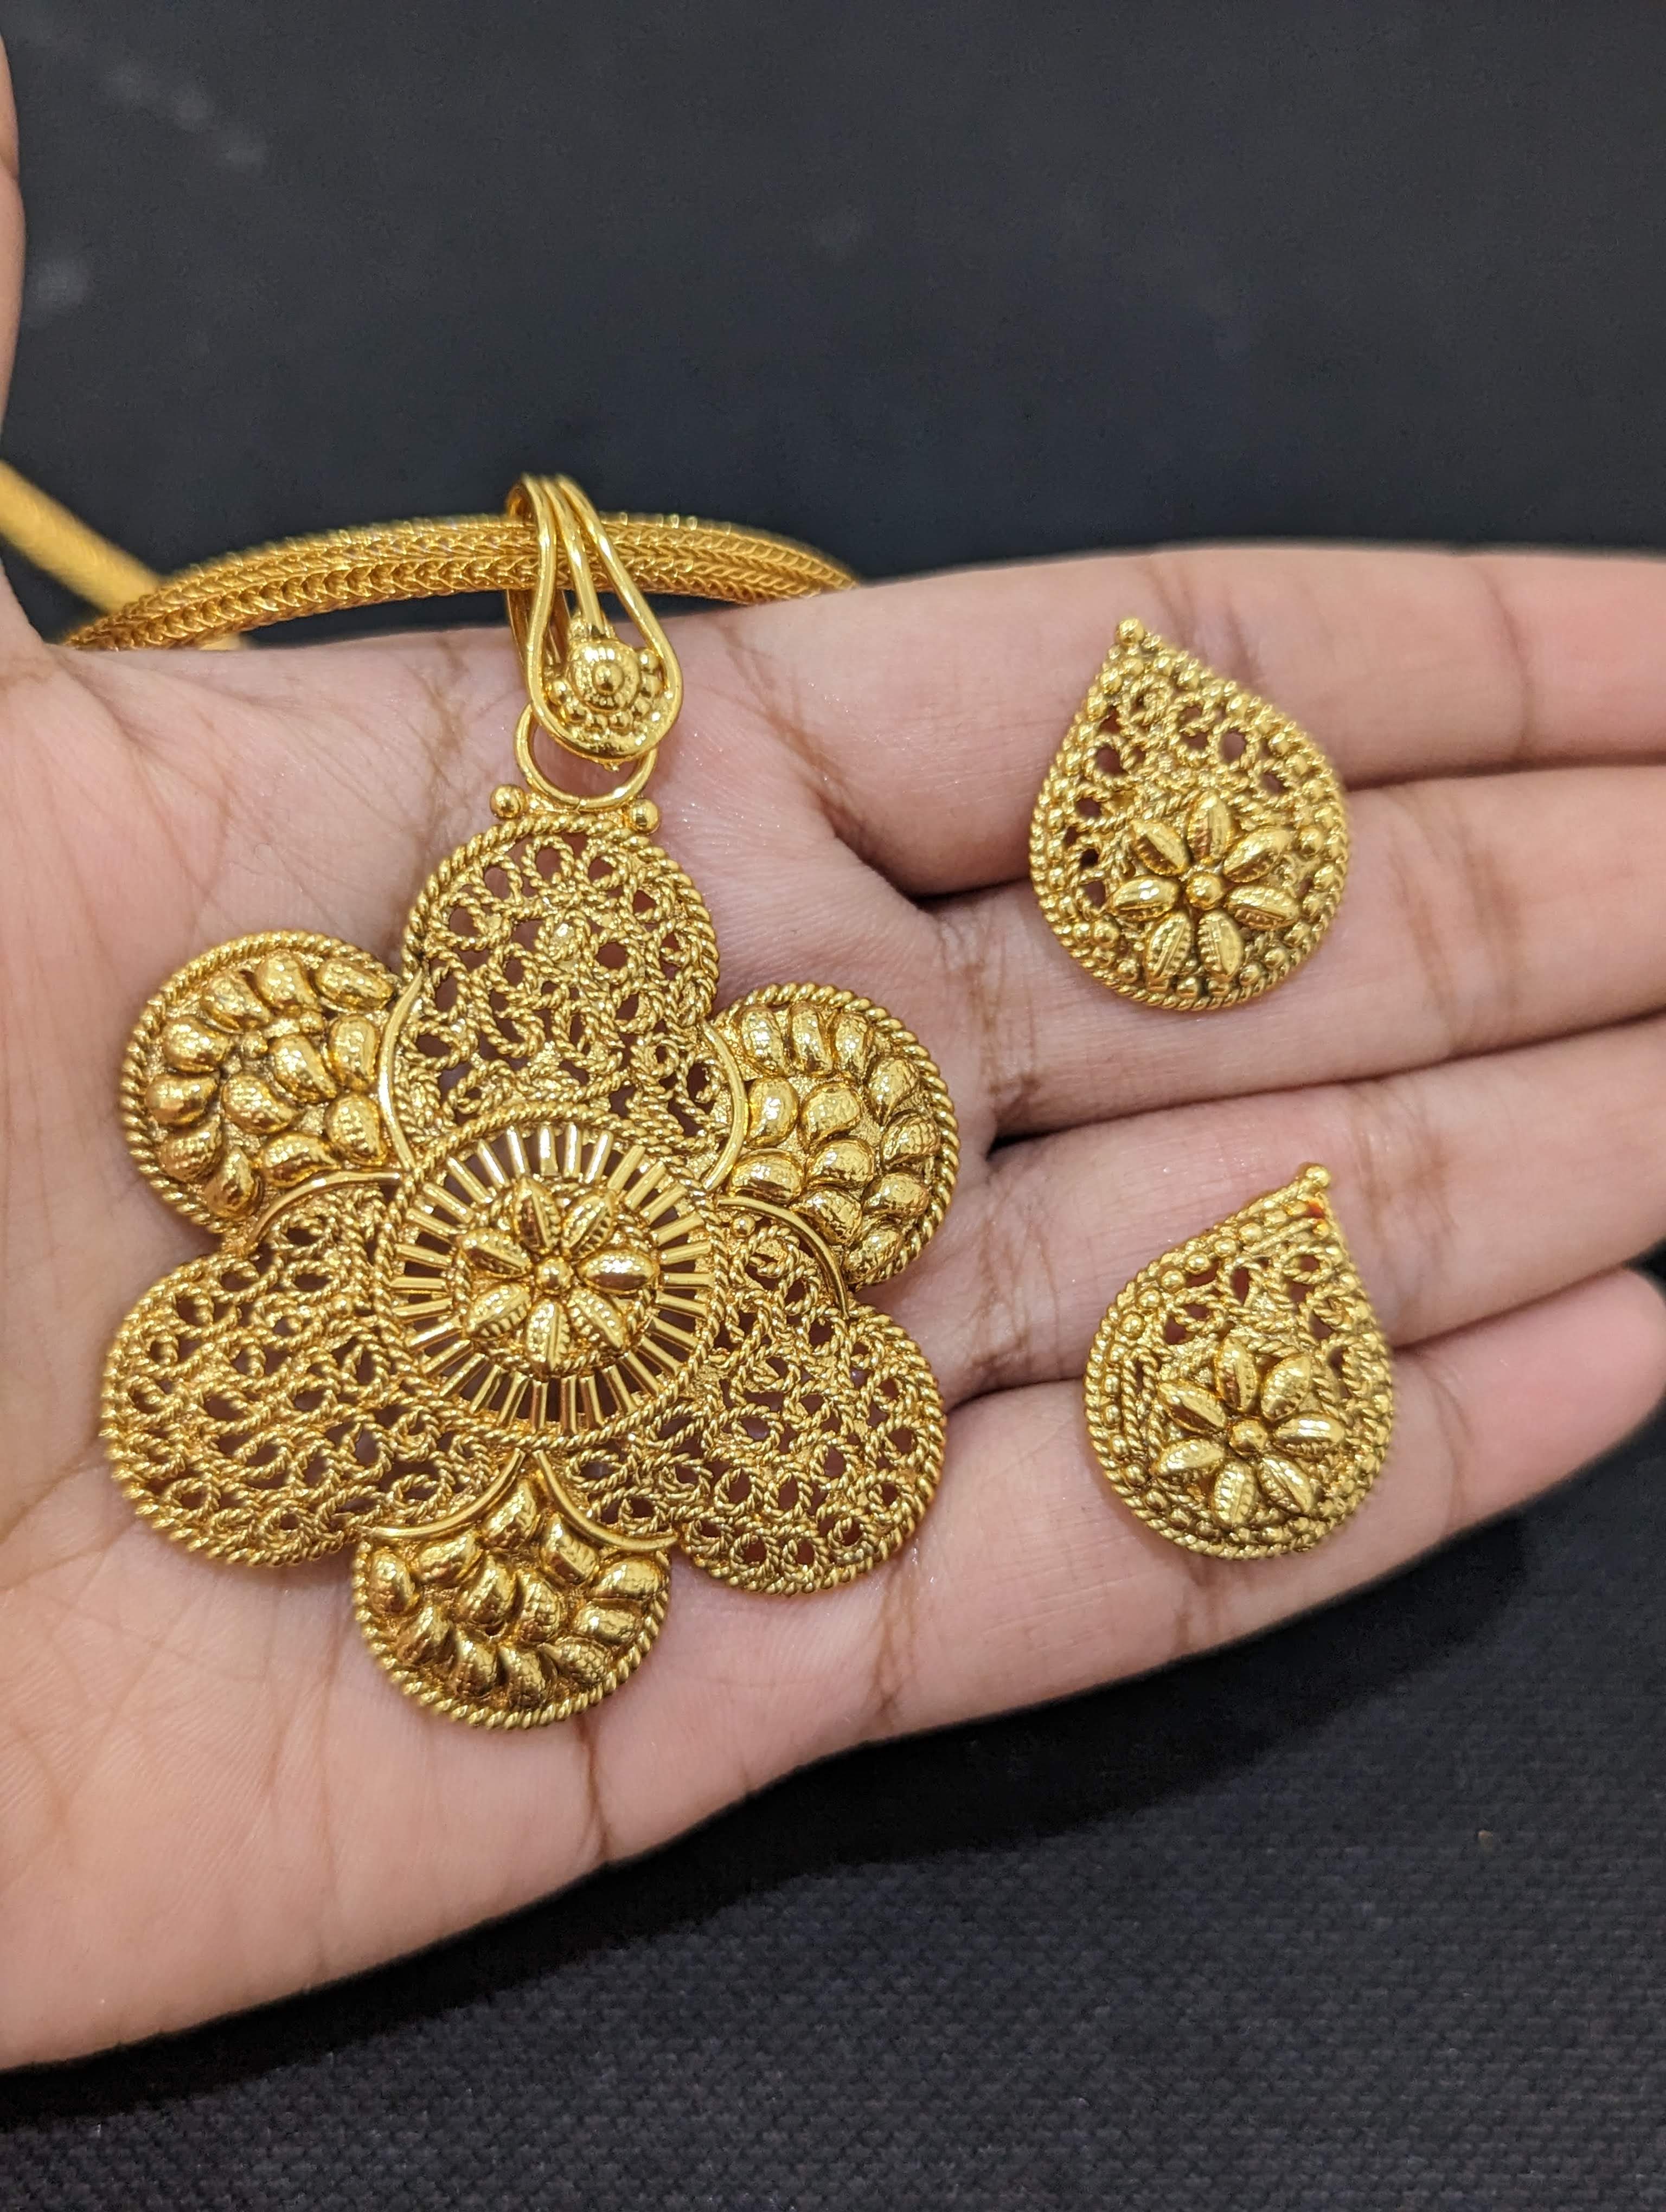 Wedding Wear 18 Carat Gold Pendant Earring Set at Rs 205000/set in Mumbai |  ID: 25410262255